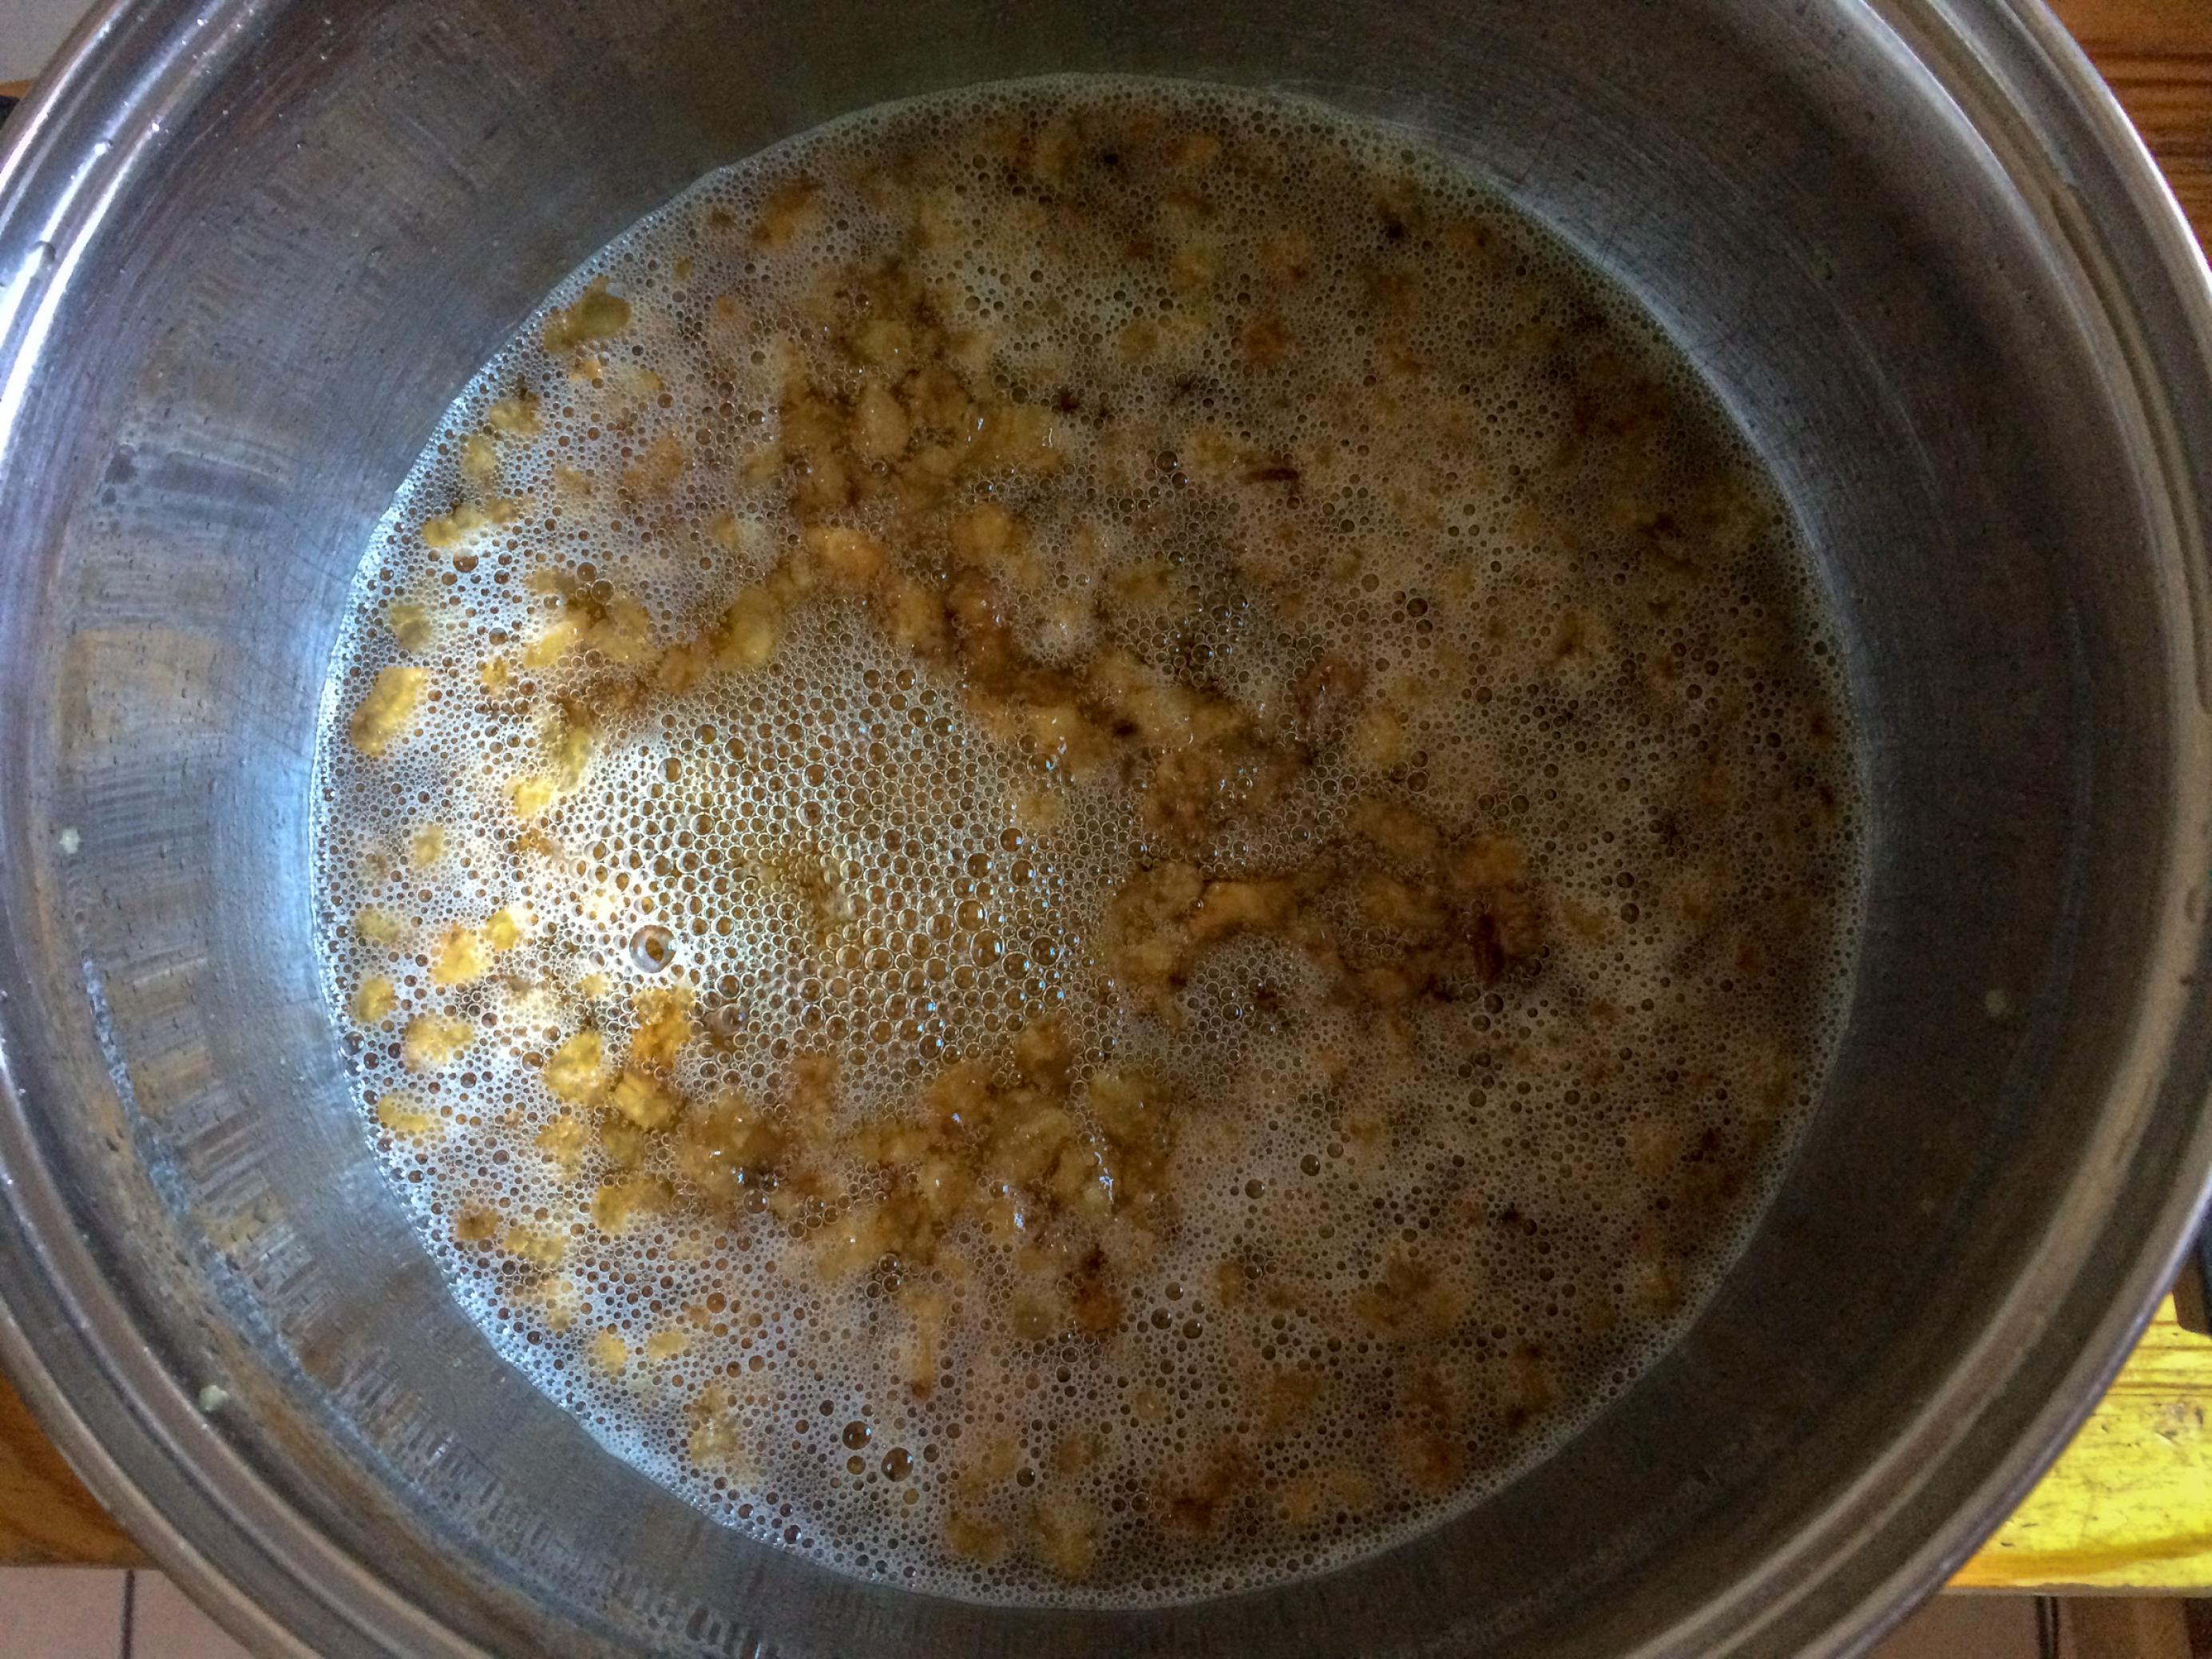 Ein Topf mit einer goldgelben Flüssigkeit, in der kleine braune Würfelchen schwimmen.